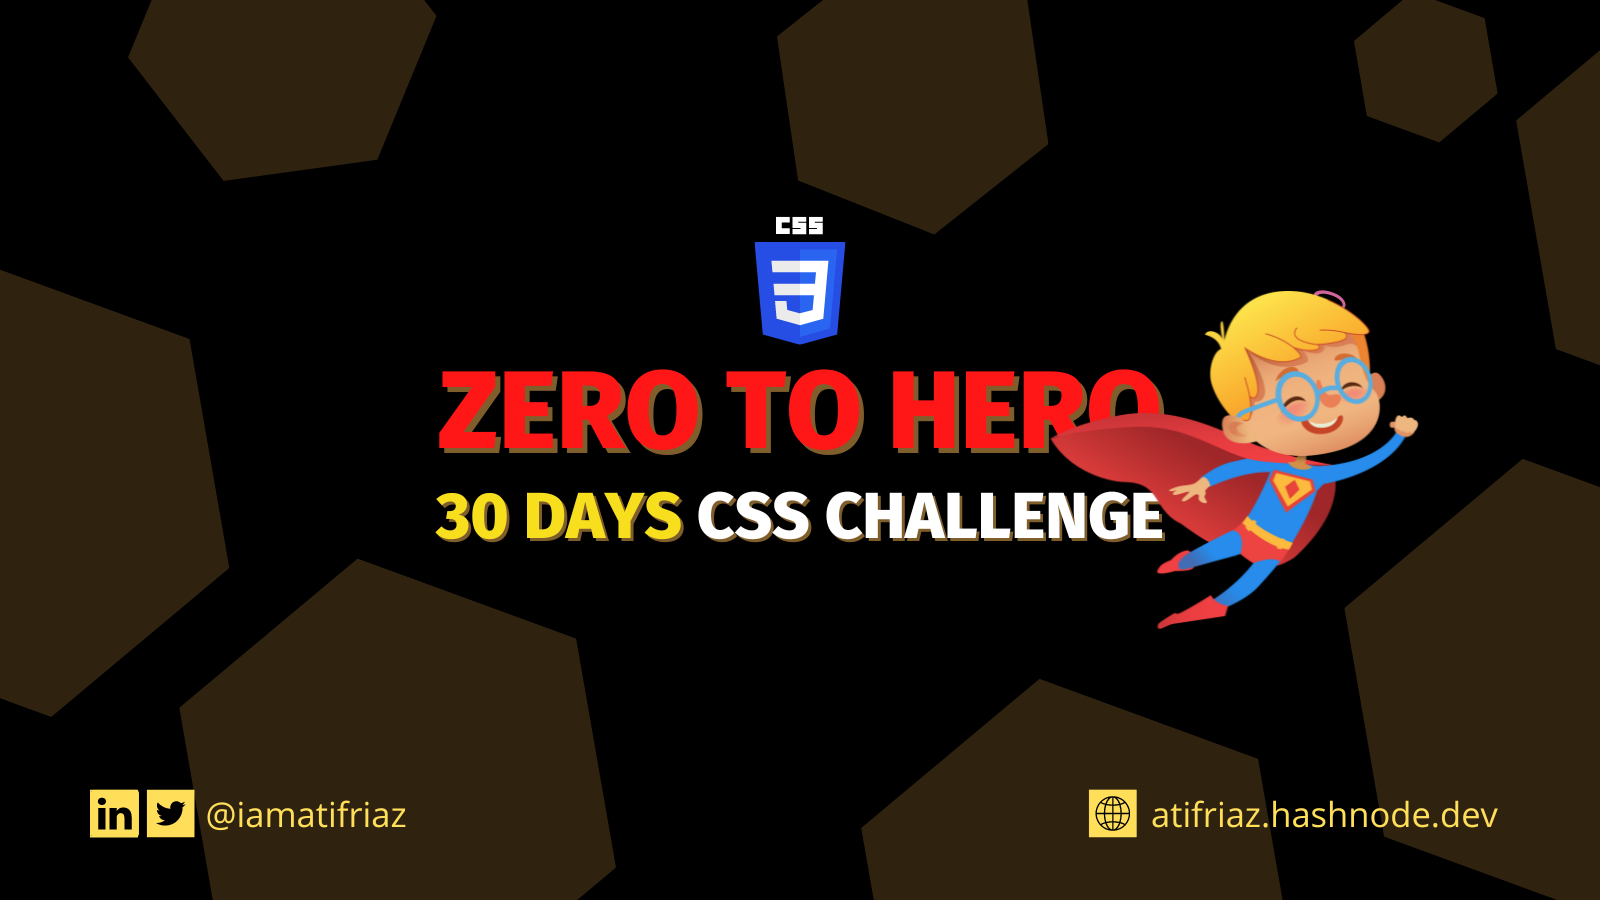 30 Days CSS challenge - ZERO to HERO